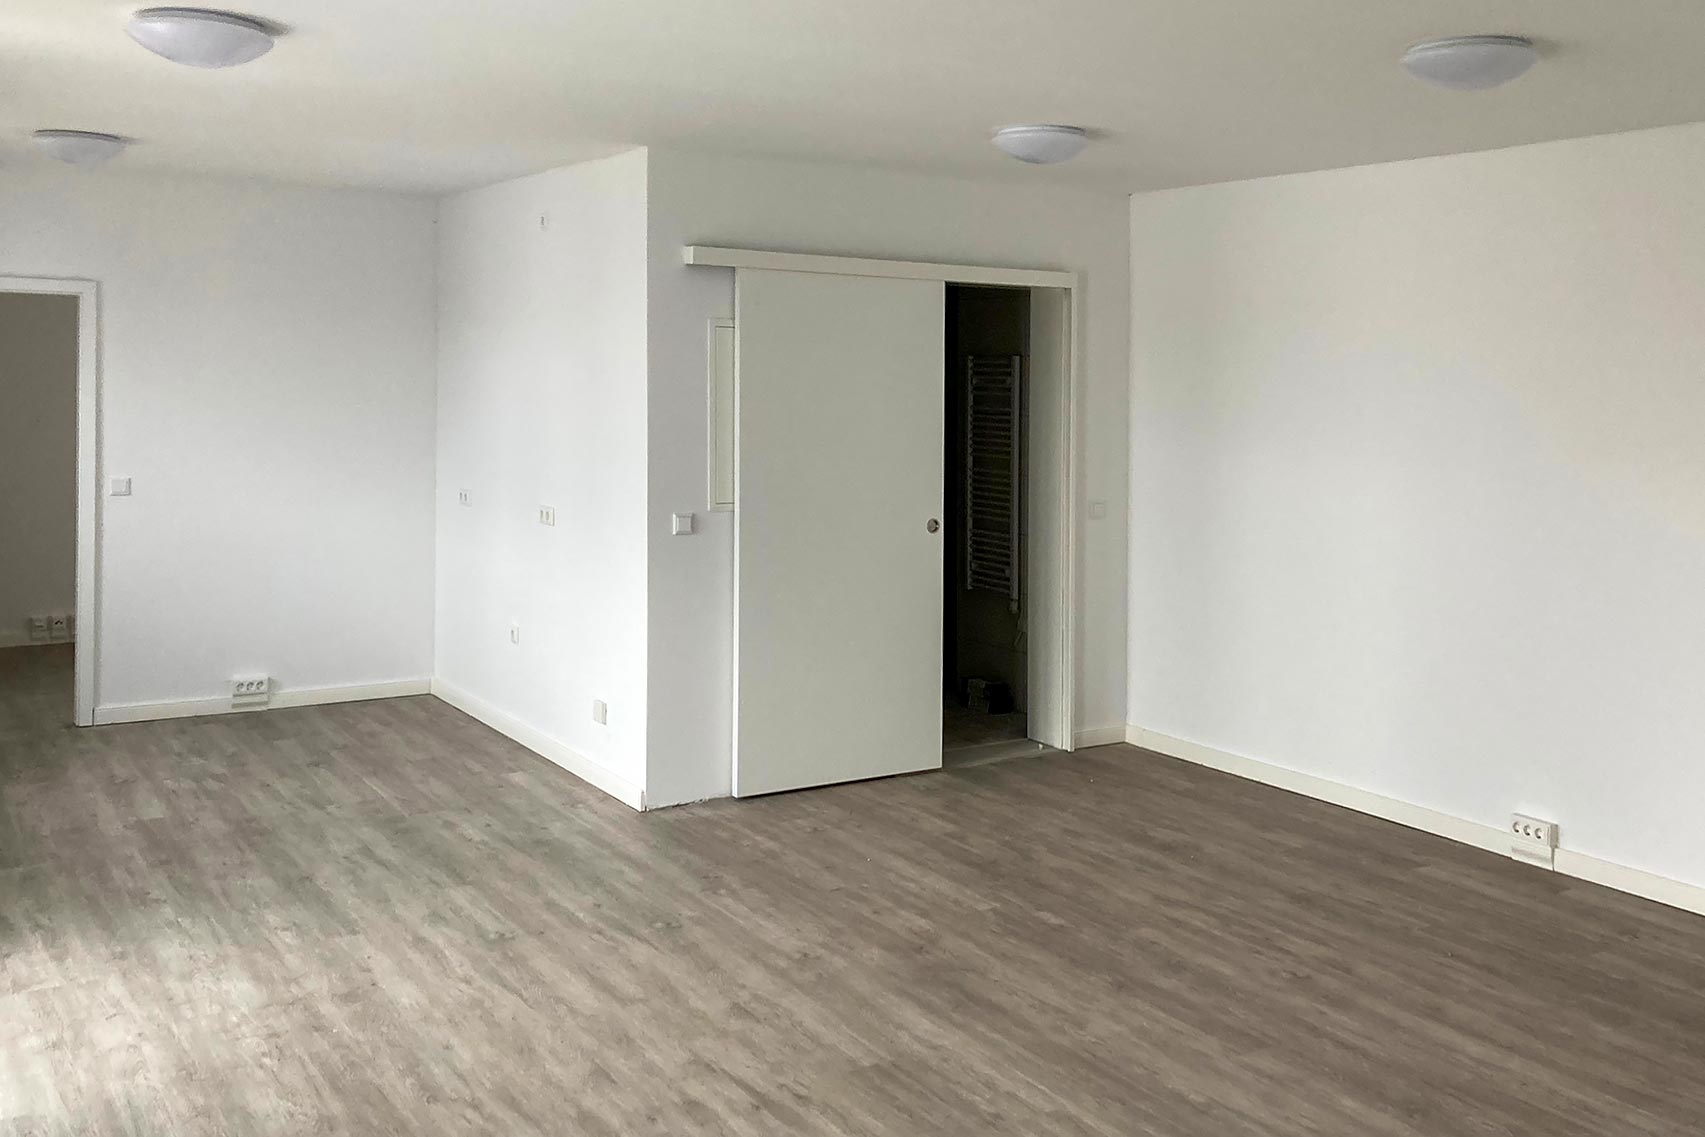 großzügige Zimmer mit neuem pflegeleichten Fußboden